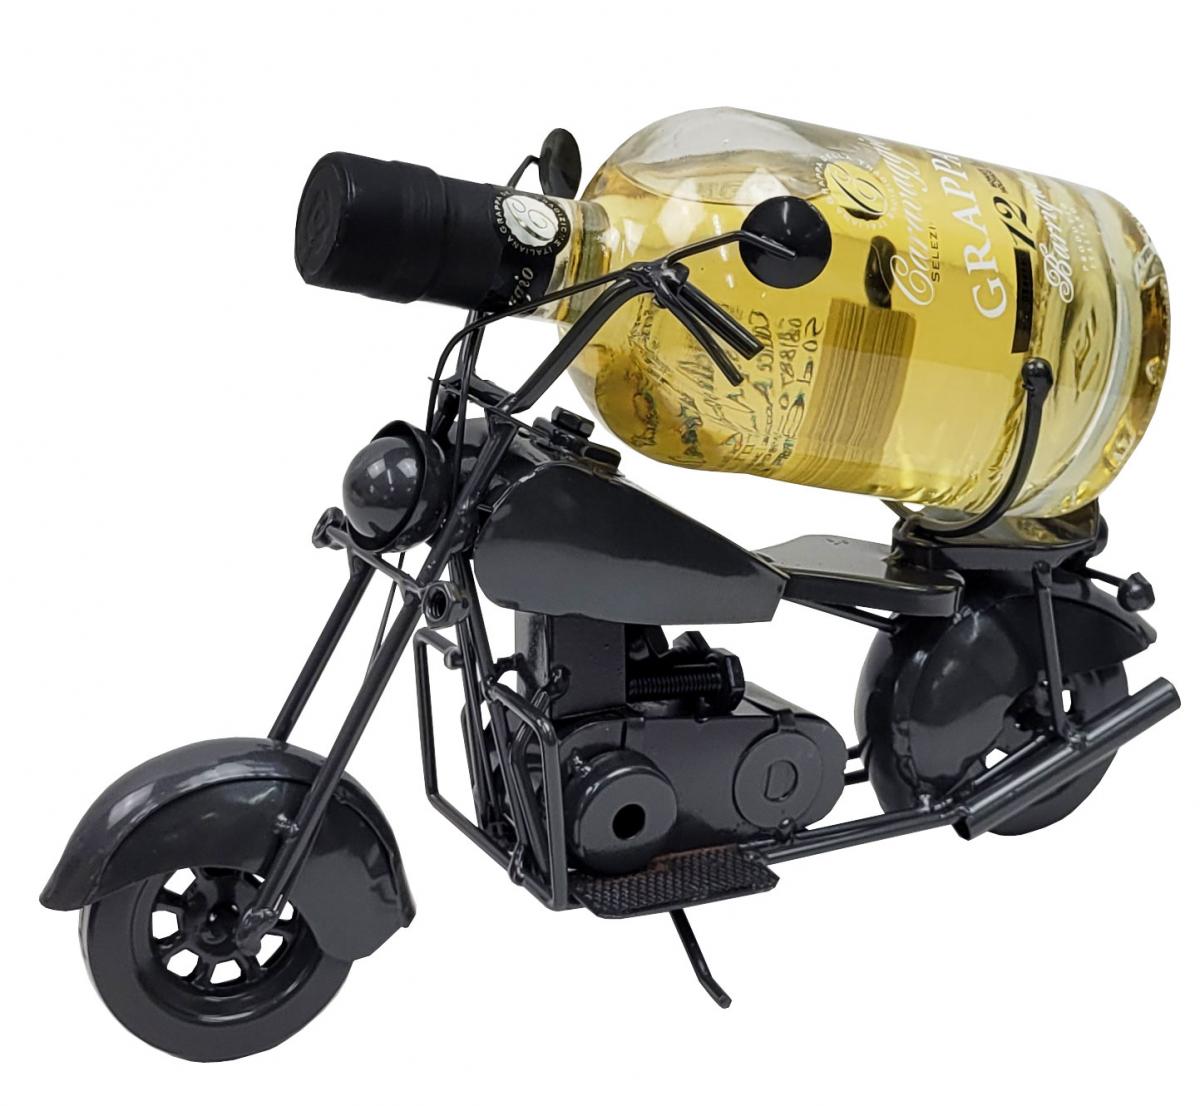 Preissturz » Flaschenhalter Chopper Flaschenständer Motorrad aus